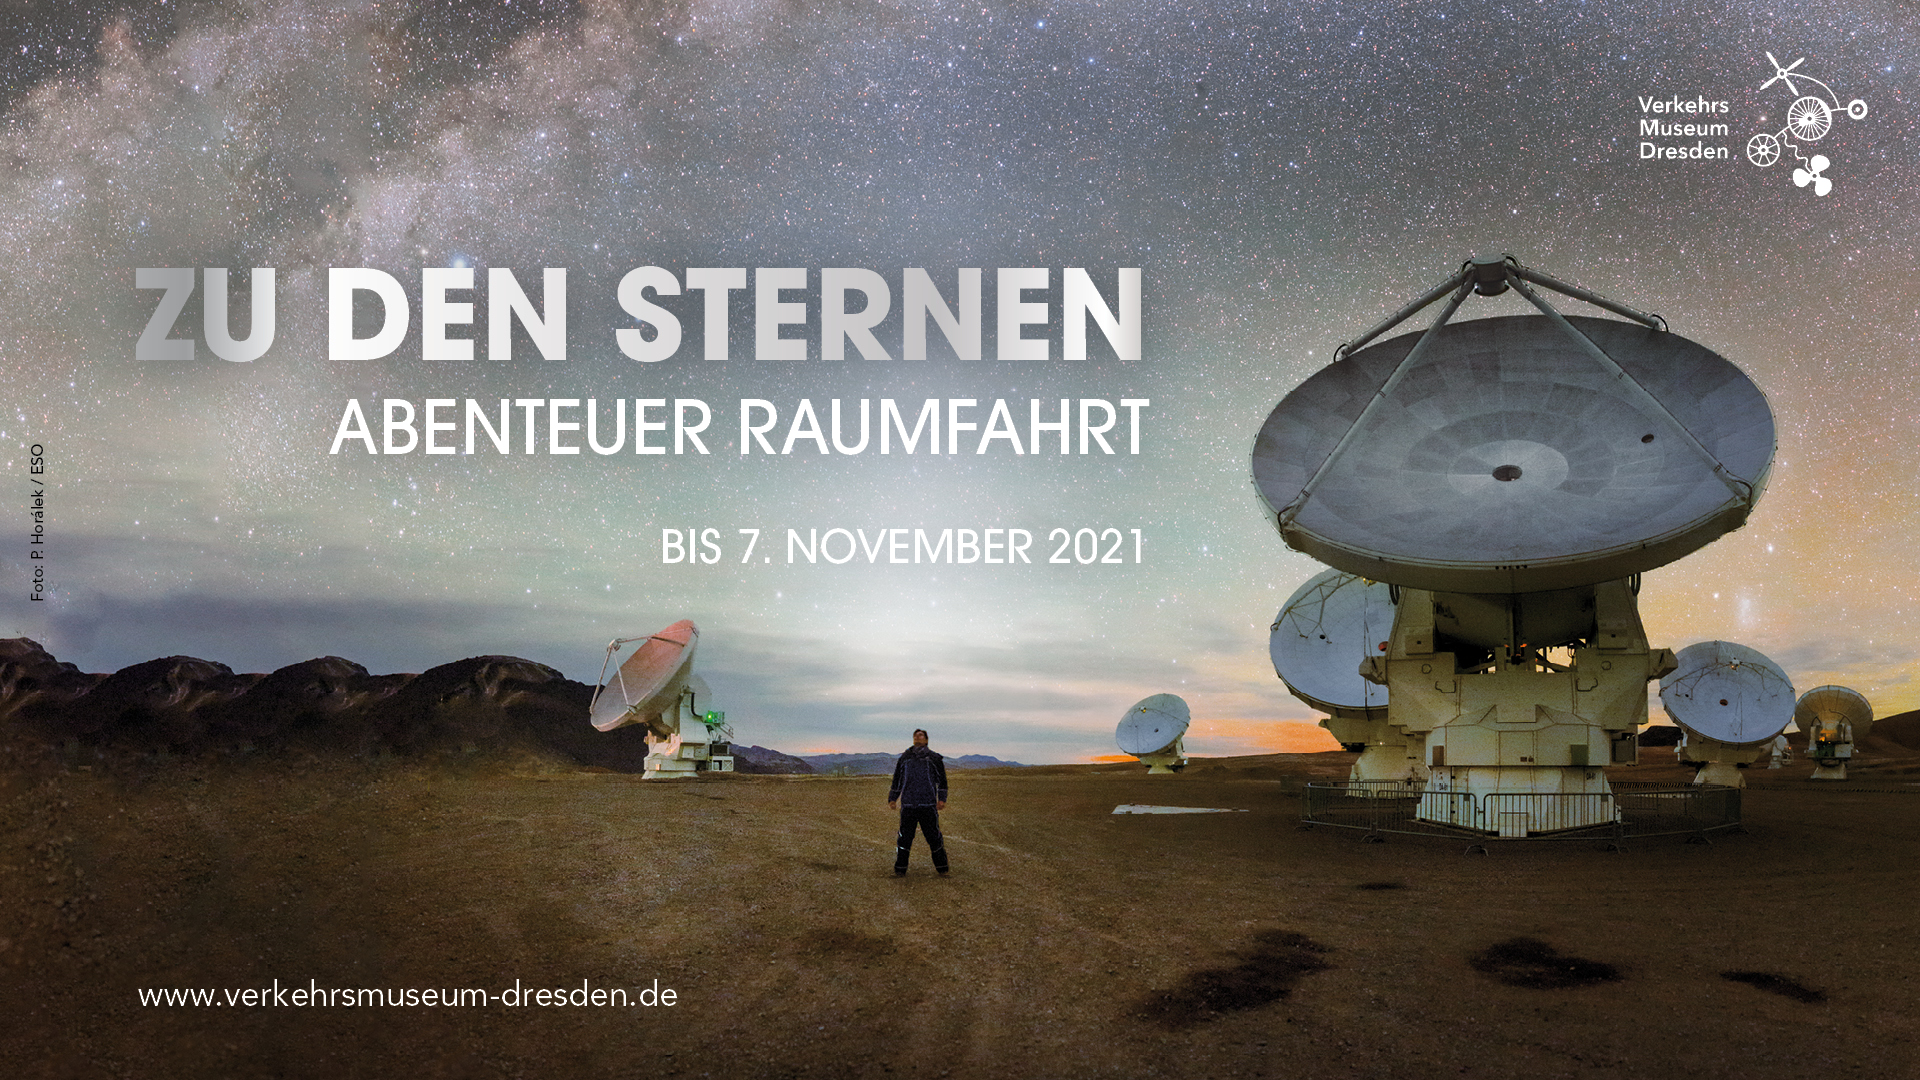 Titelmotiv Ausstellung "Zu den Sternen. Abenteuer Raumfahrt"